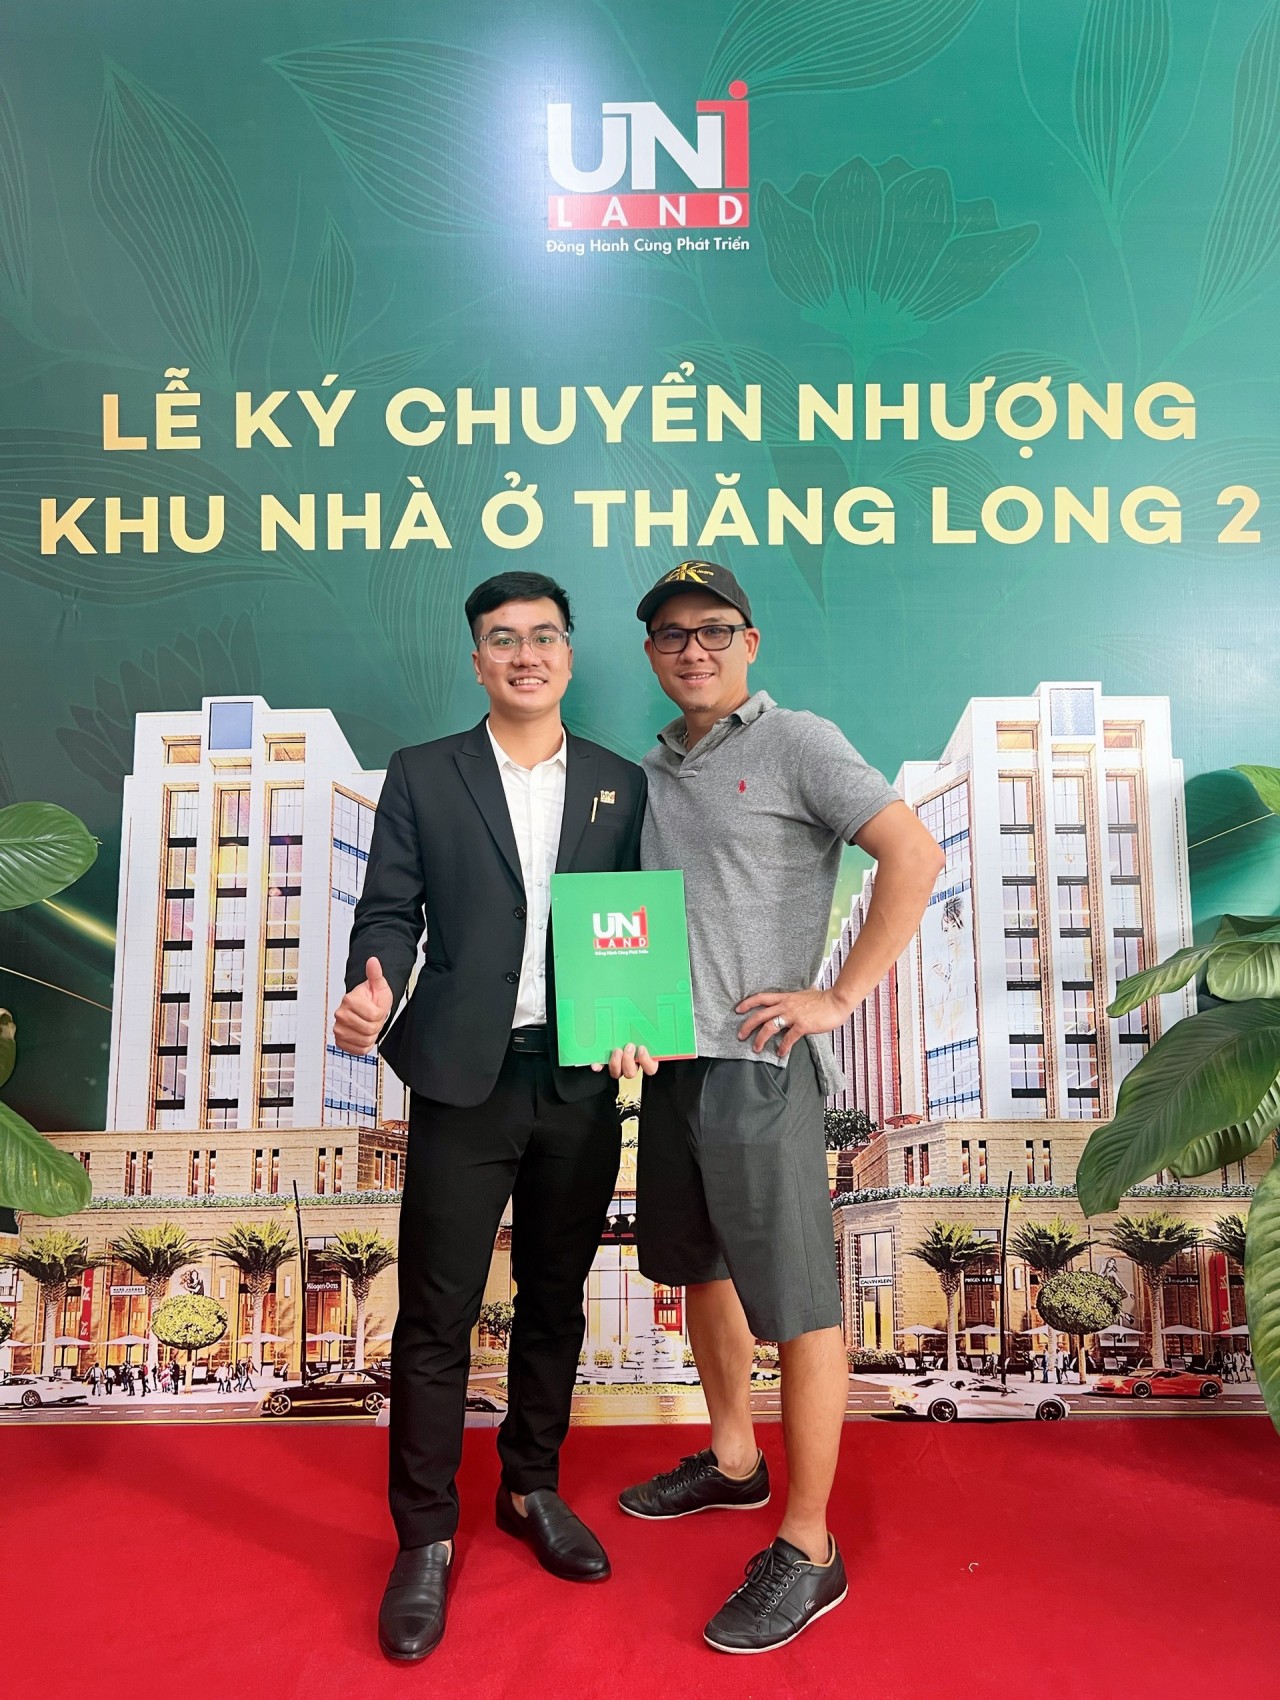 Anh Trần Thanh Cần và khách hàng của anh ấy tại Lễ ký chuyển nhượng Khu đô thị Thăng Long Central City (Khu nhà ở Thăng Long 2) Bàu Bàng. (Ảnh: CANLAND)